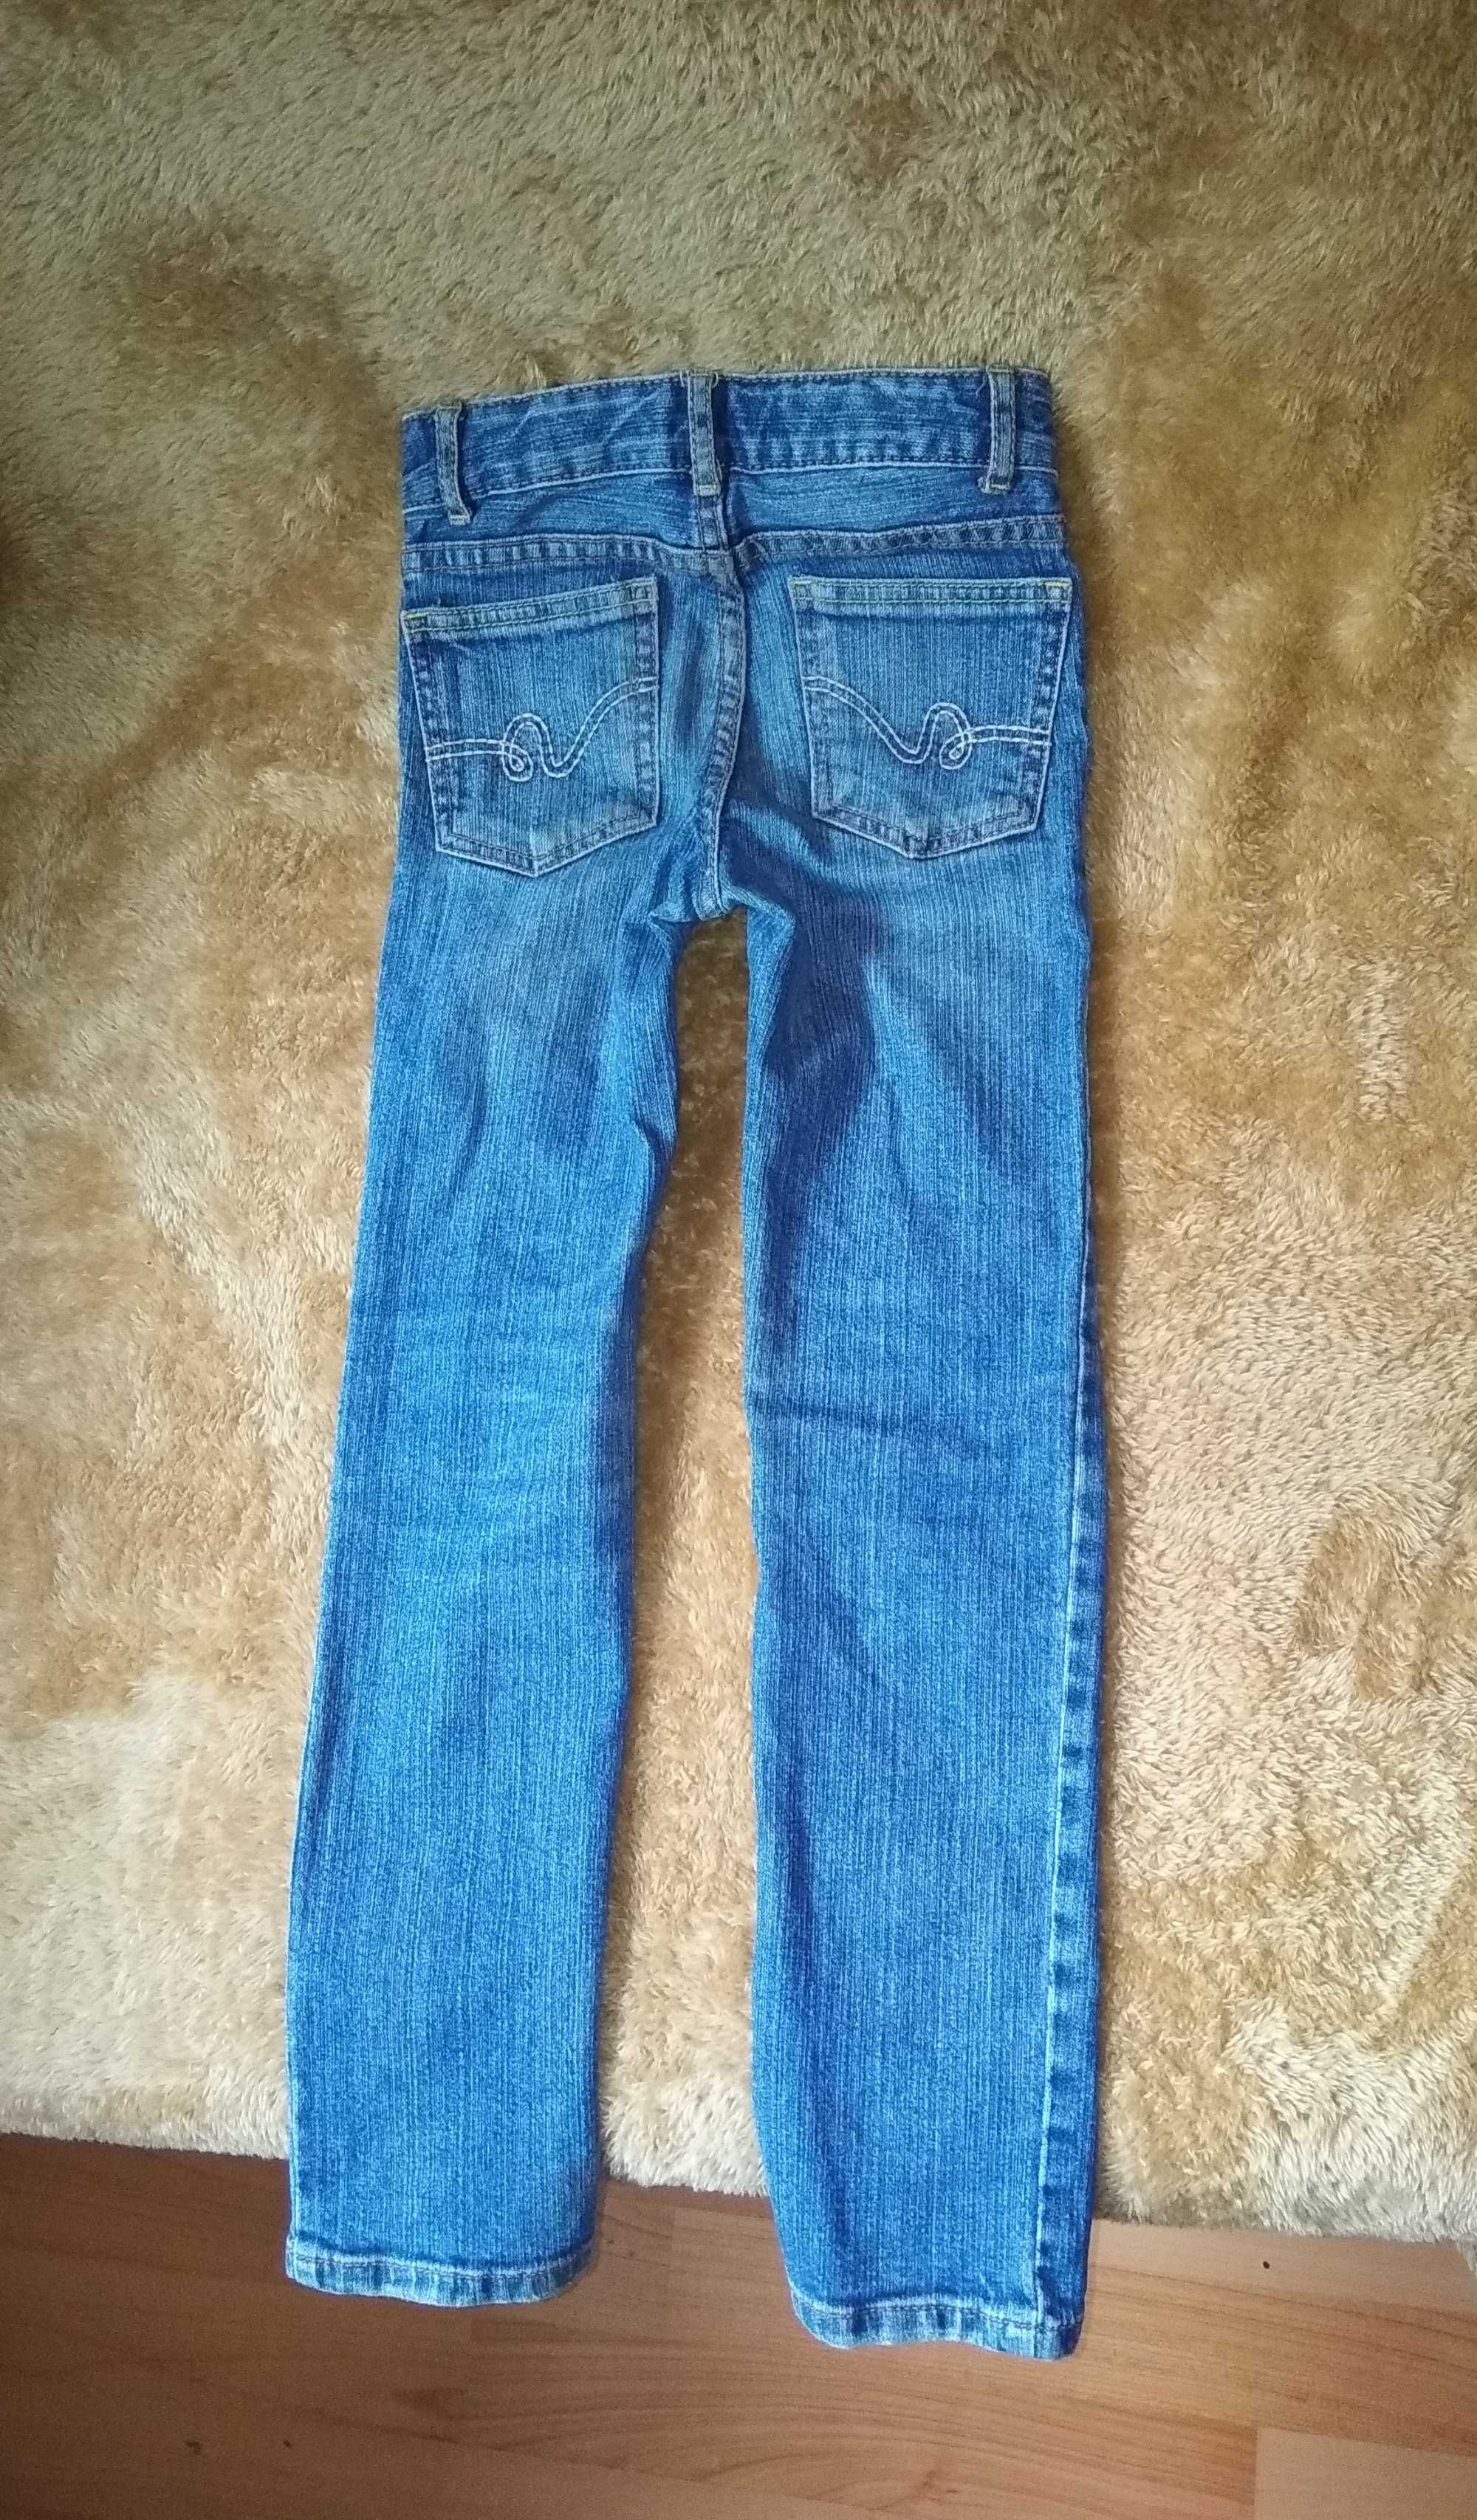 Детская джинсовая одежда на 2-3 годика